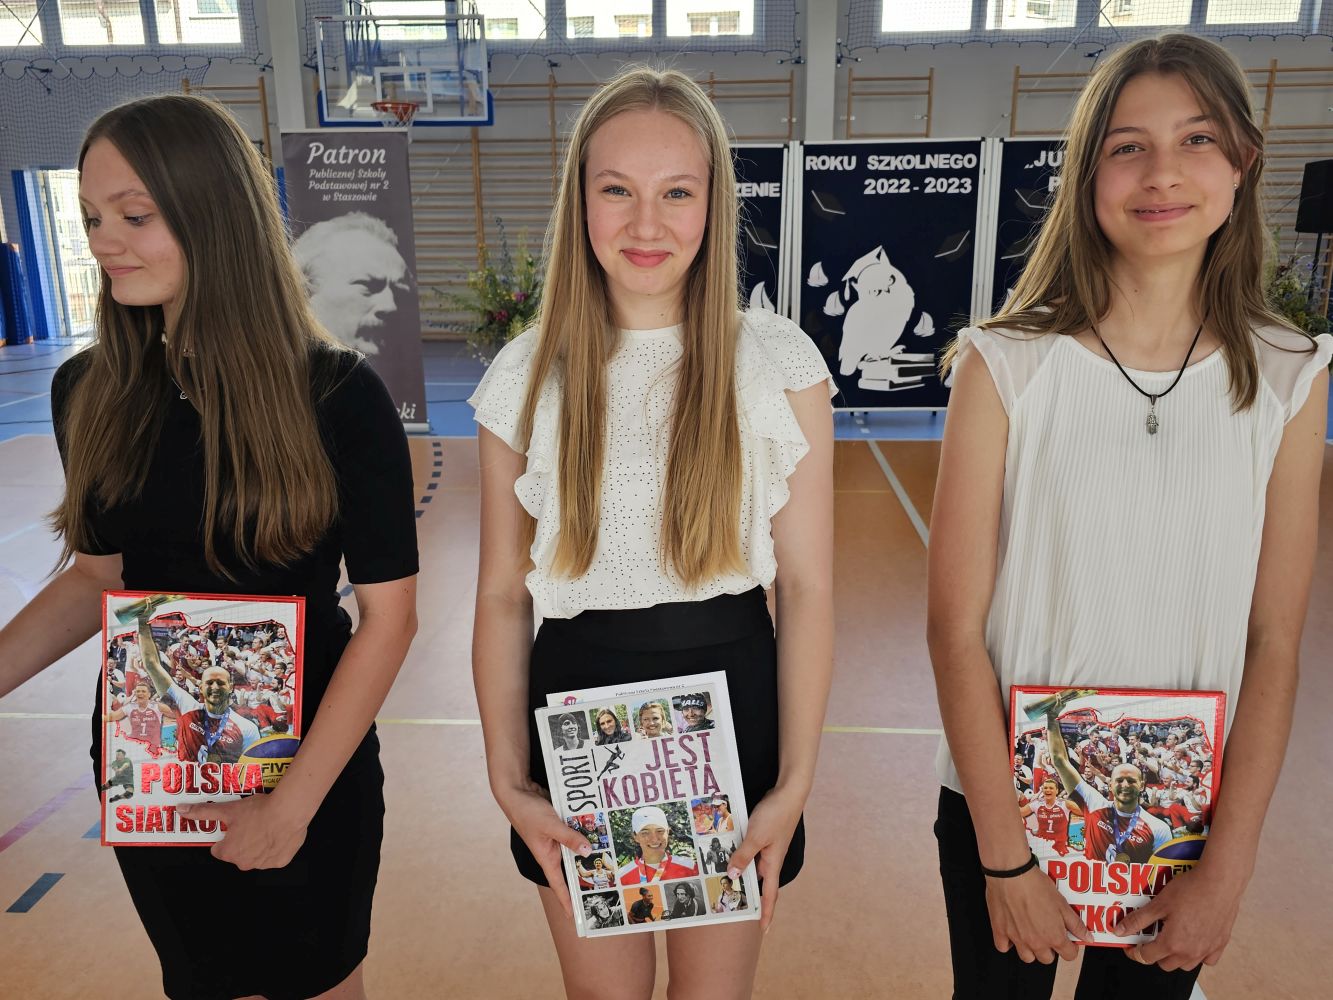 Trzy uczennice z nagrodami książkowymi za osiągnięcia sportowe stoją na tle dekoracji